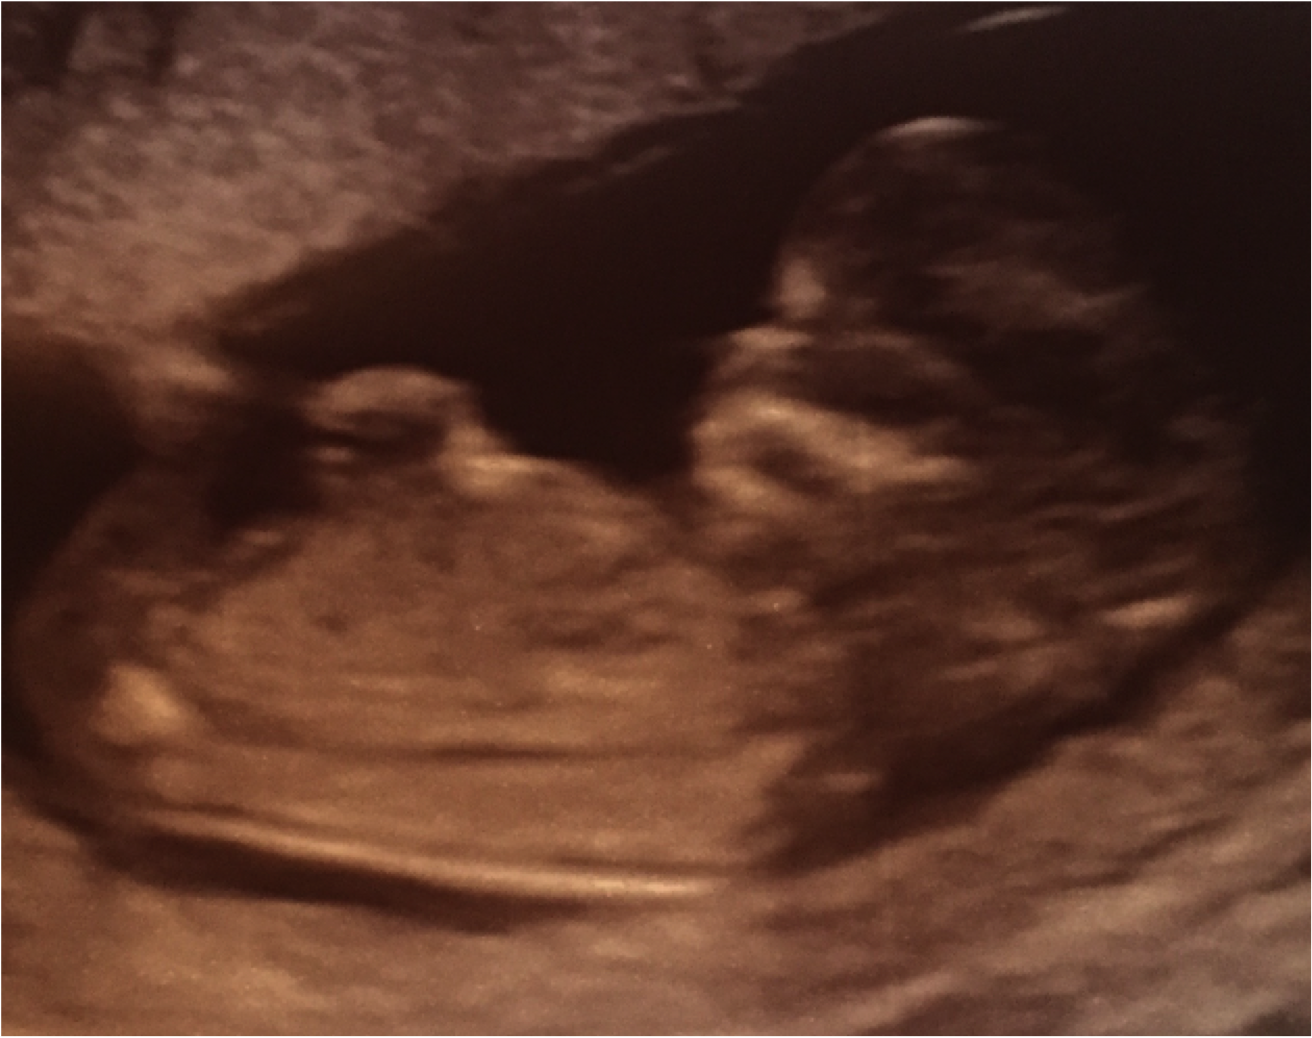 イギリス ロンドンで妊娠生活 イギリスの初エコー検査 出生前診断 12週 Live A Little